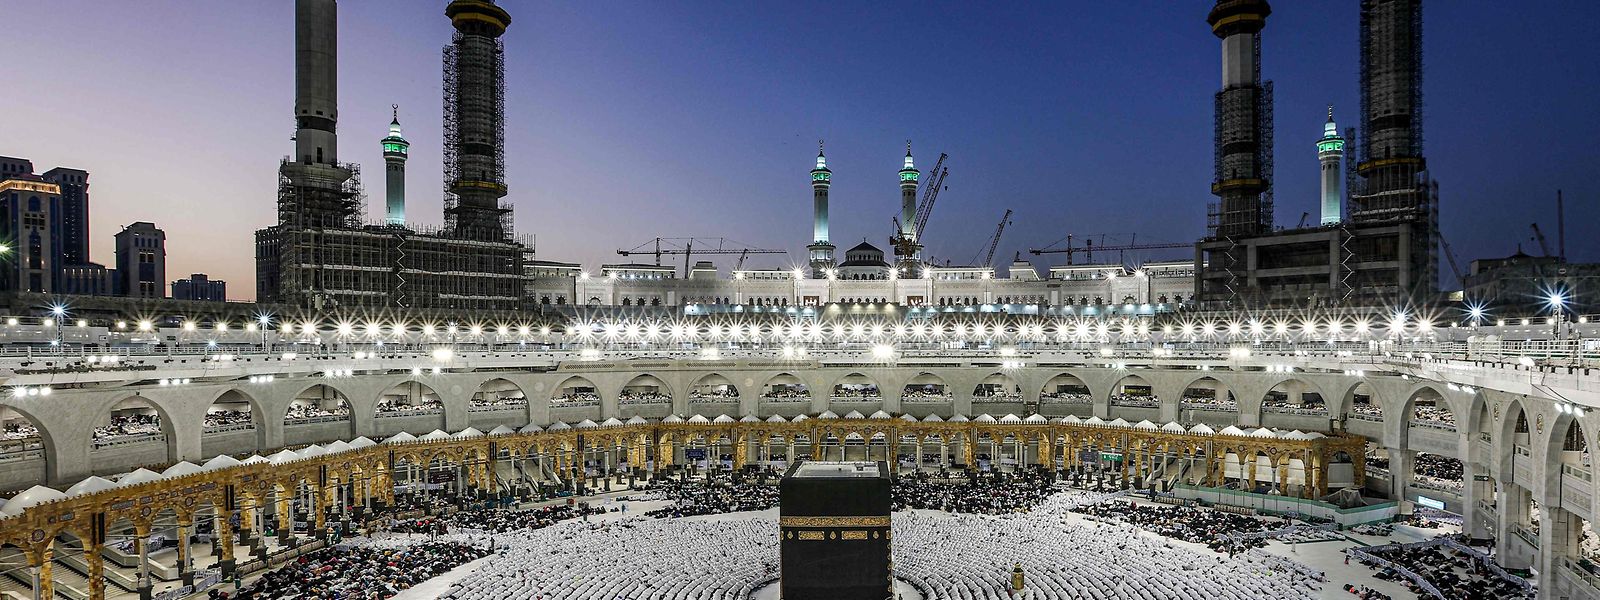 Muslimische Gläubige versammeln sich am 23. März 2023 in der großen Moschee in der heiligen Stadt Mekka vor der Kaaba, dem heiligsten Schrein des Islam.